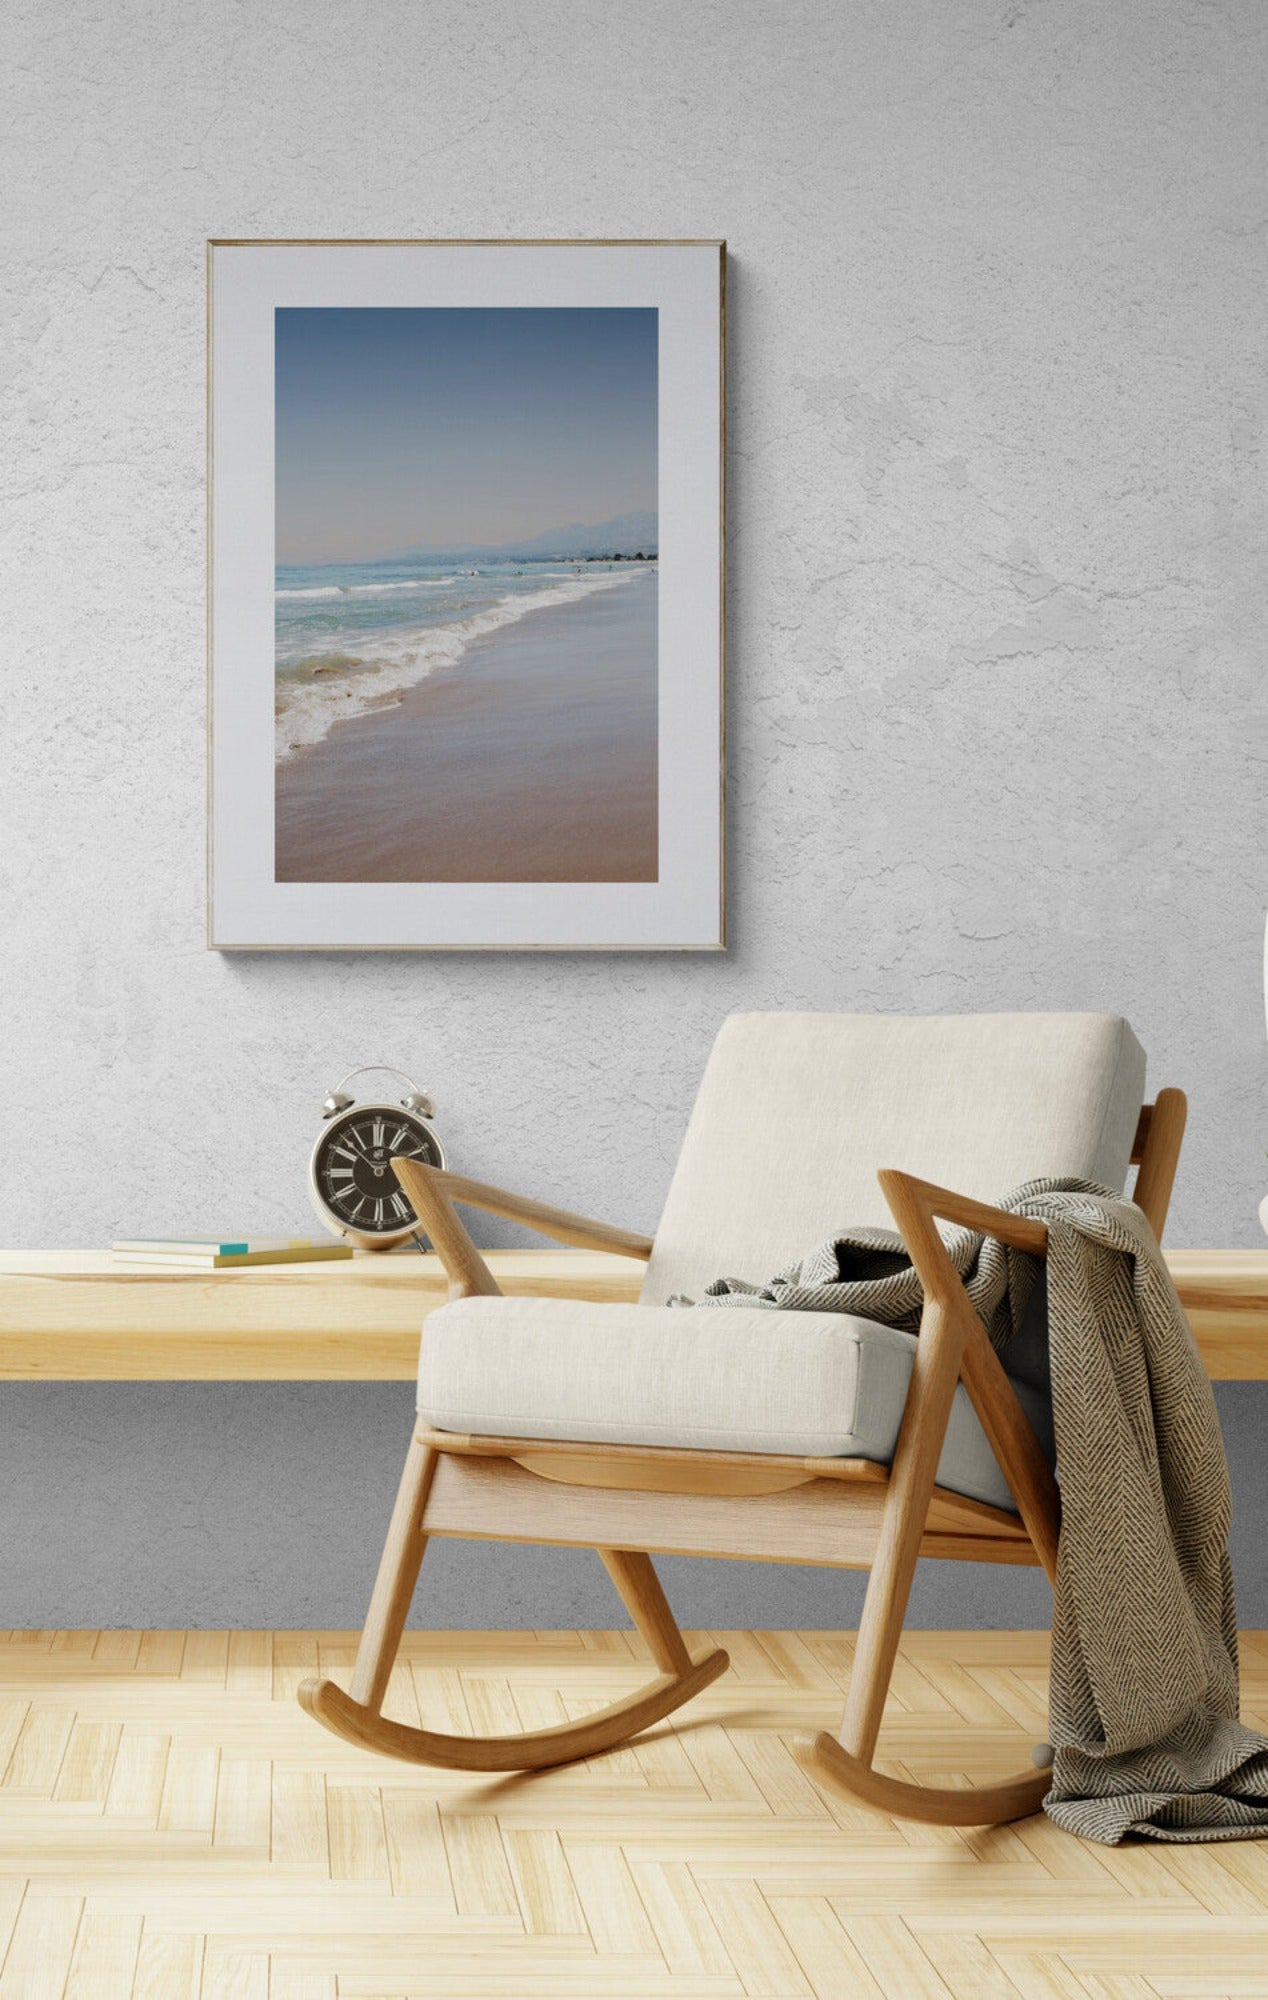 carpinteria state beach california photograph as wall art in a sitting room